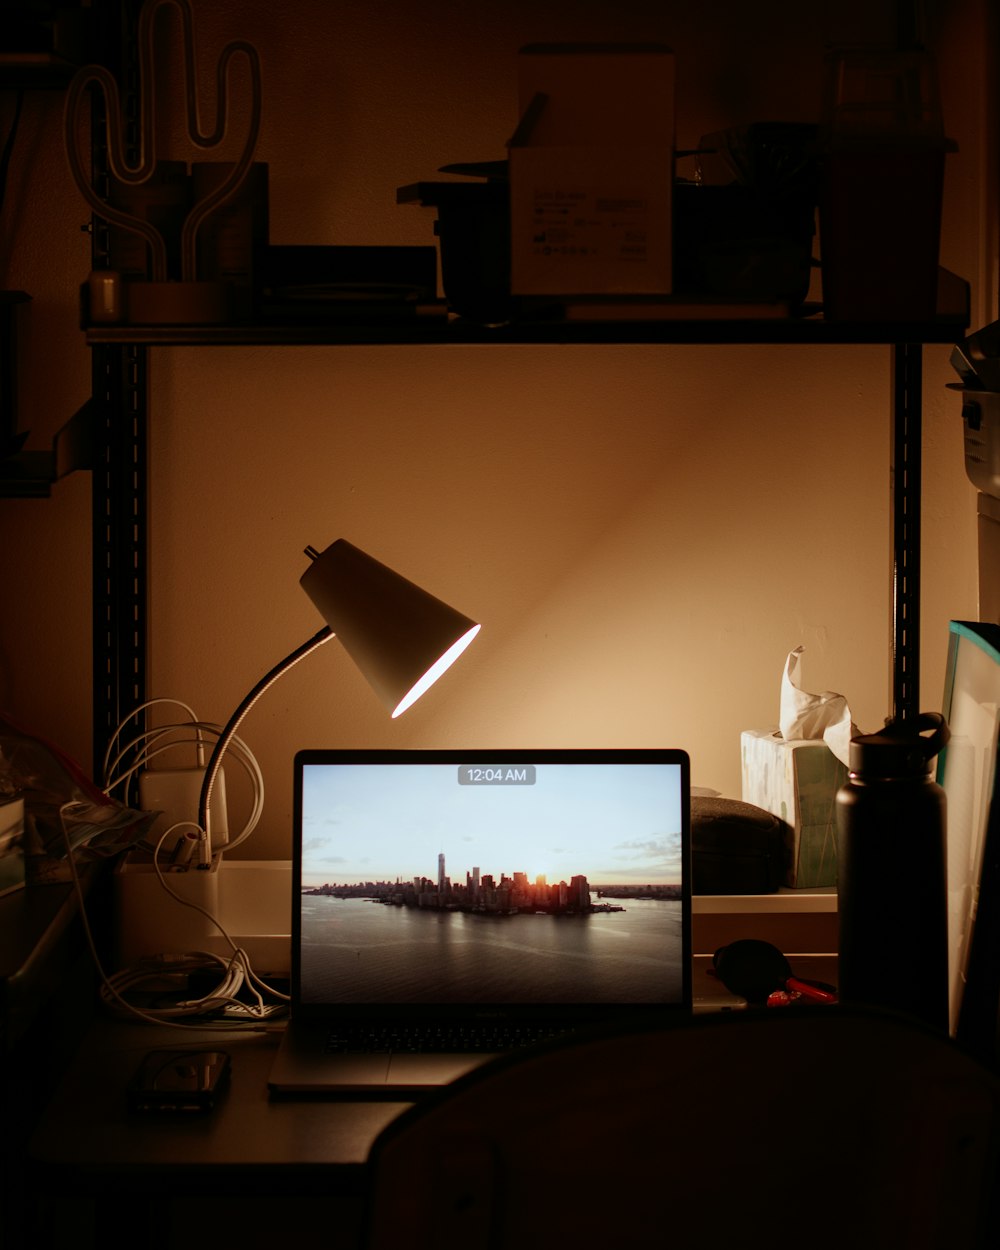 Portátil encendido al lado de la lámpara de escritorio encendida